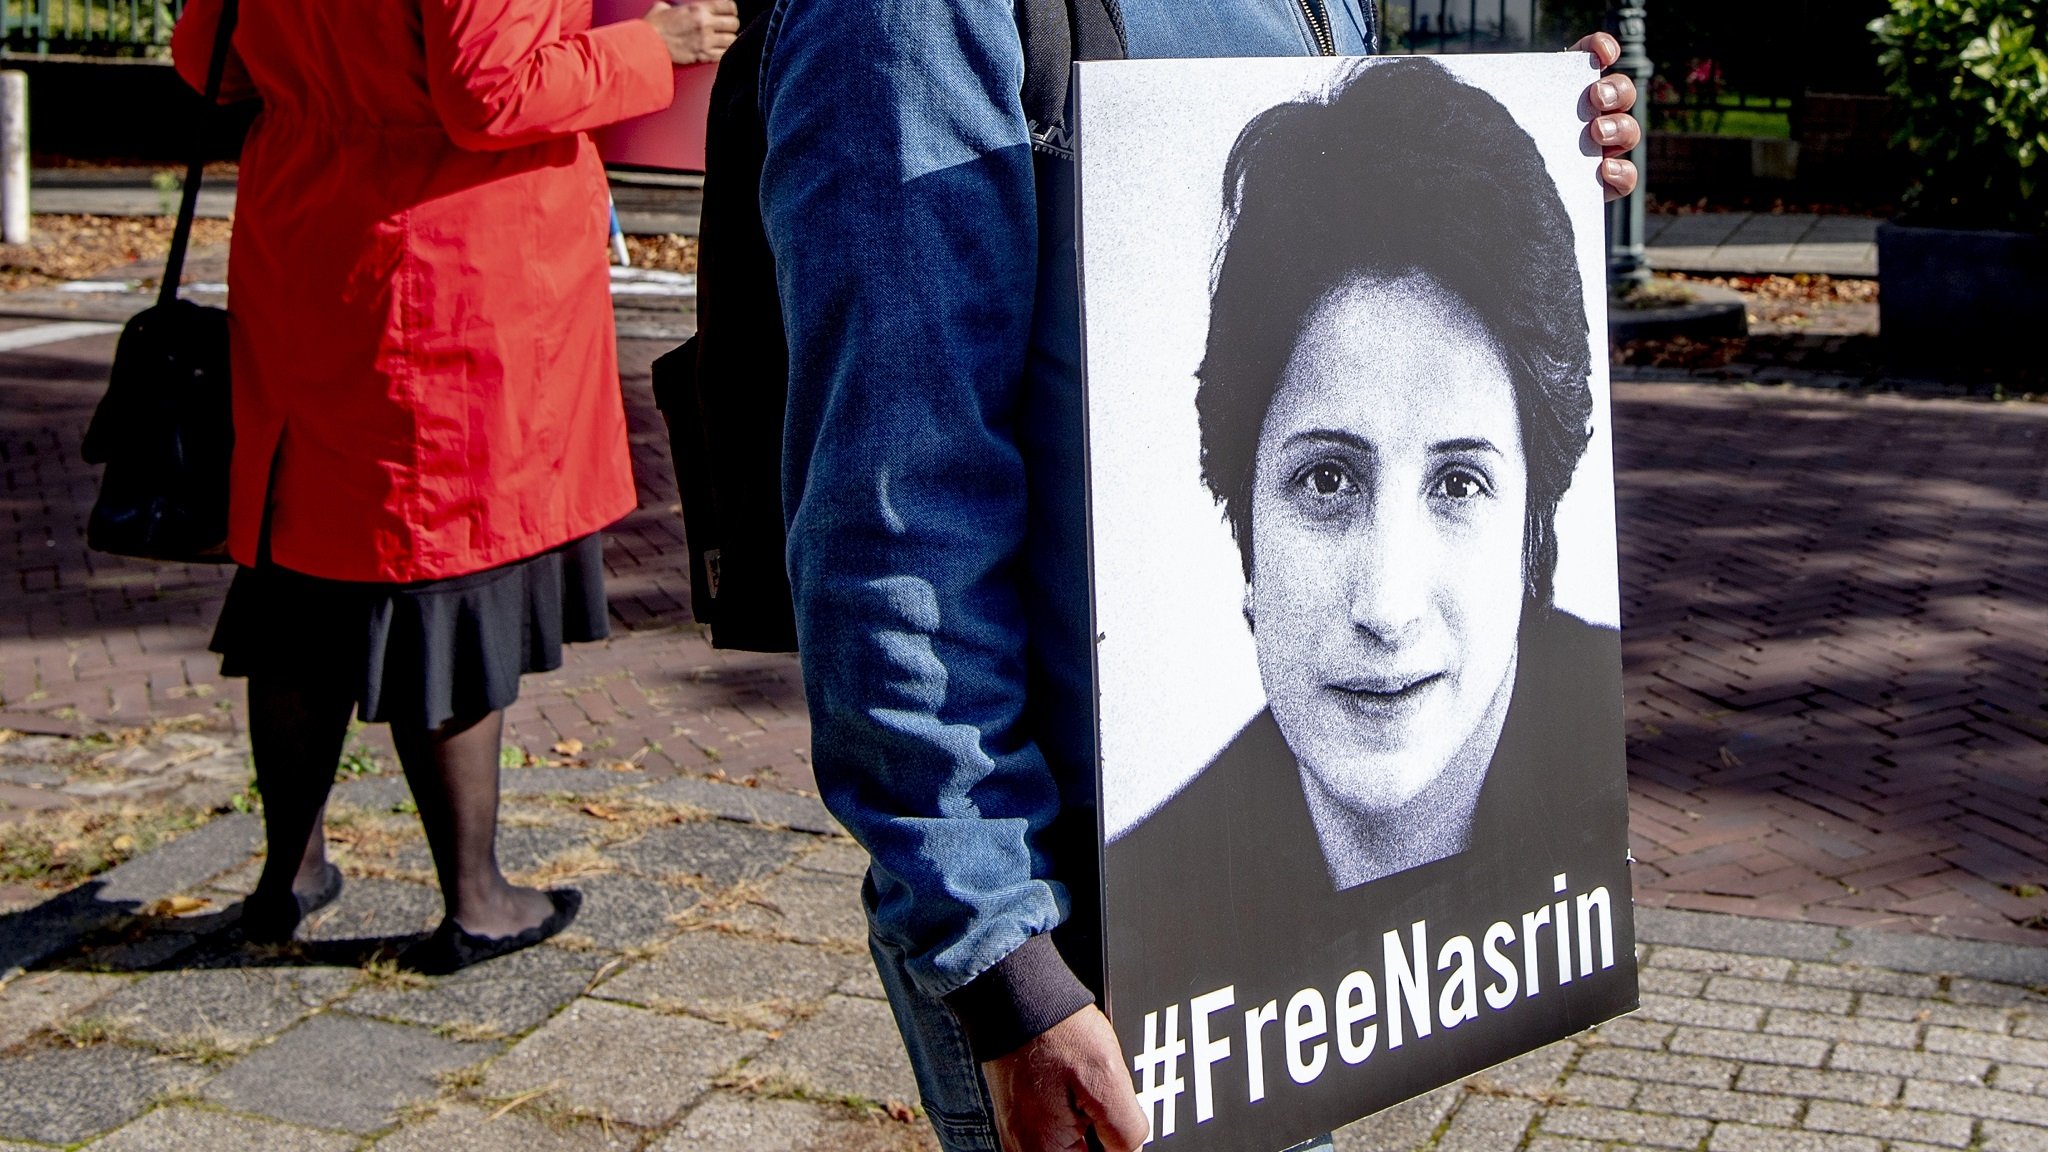 Plakat mit der Aufforderung, die iranische Menschenrechtsanwältin Nasrin Sotoudeh freizulassen